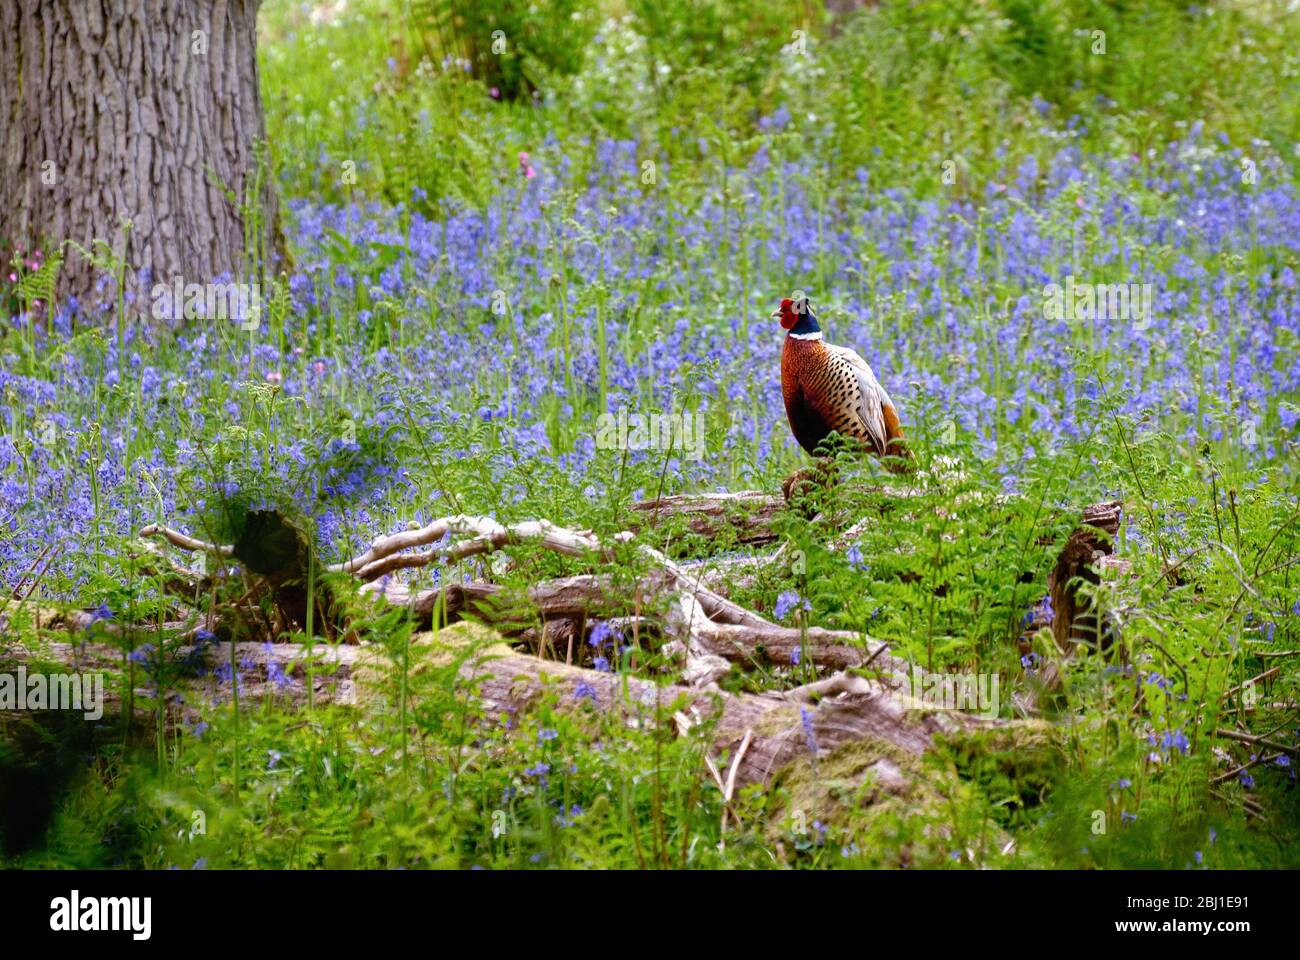 Un mâle Red Pheasant, Phasianus colchicus, assis sur un bois parmi bluebell et les fougères, Surrey Hills Angleterre Royaume-Uni Banque D'Images